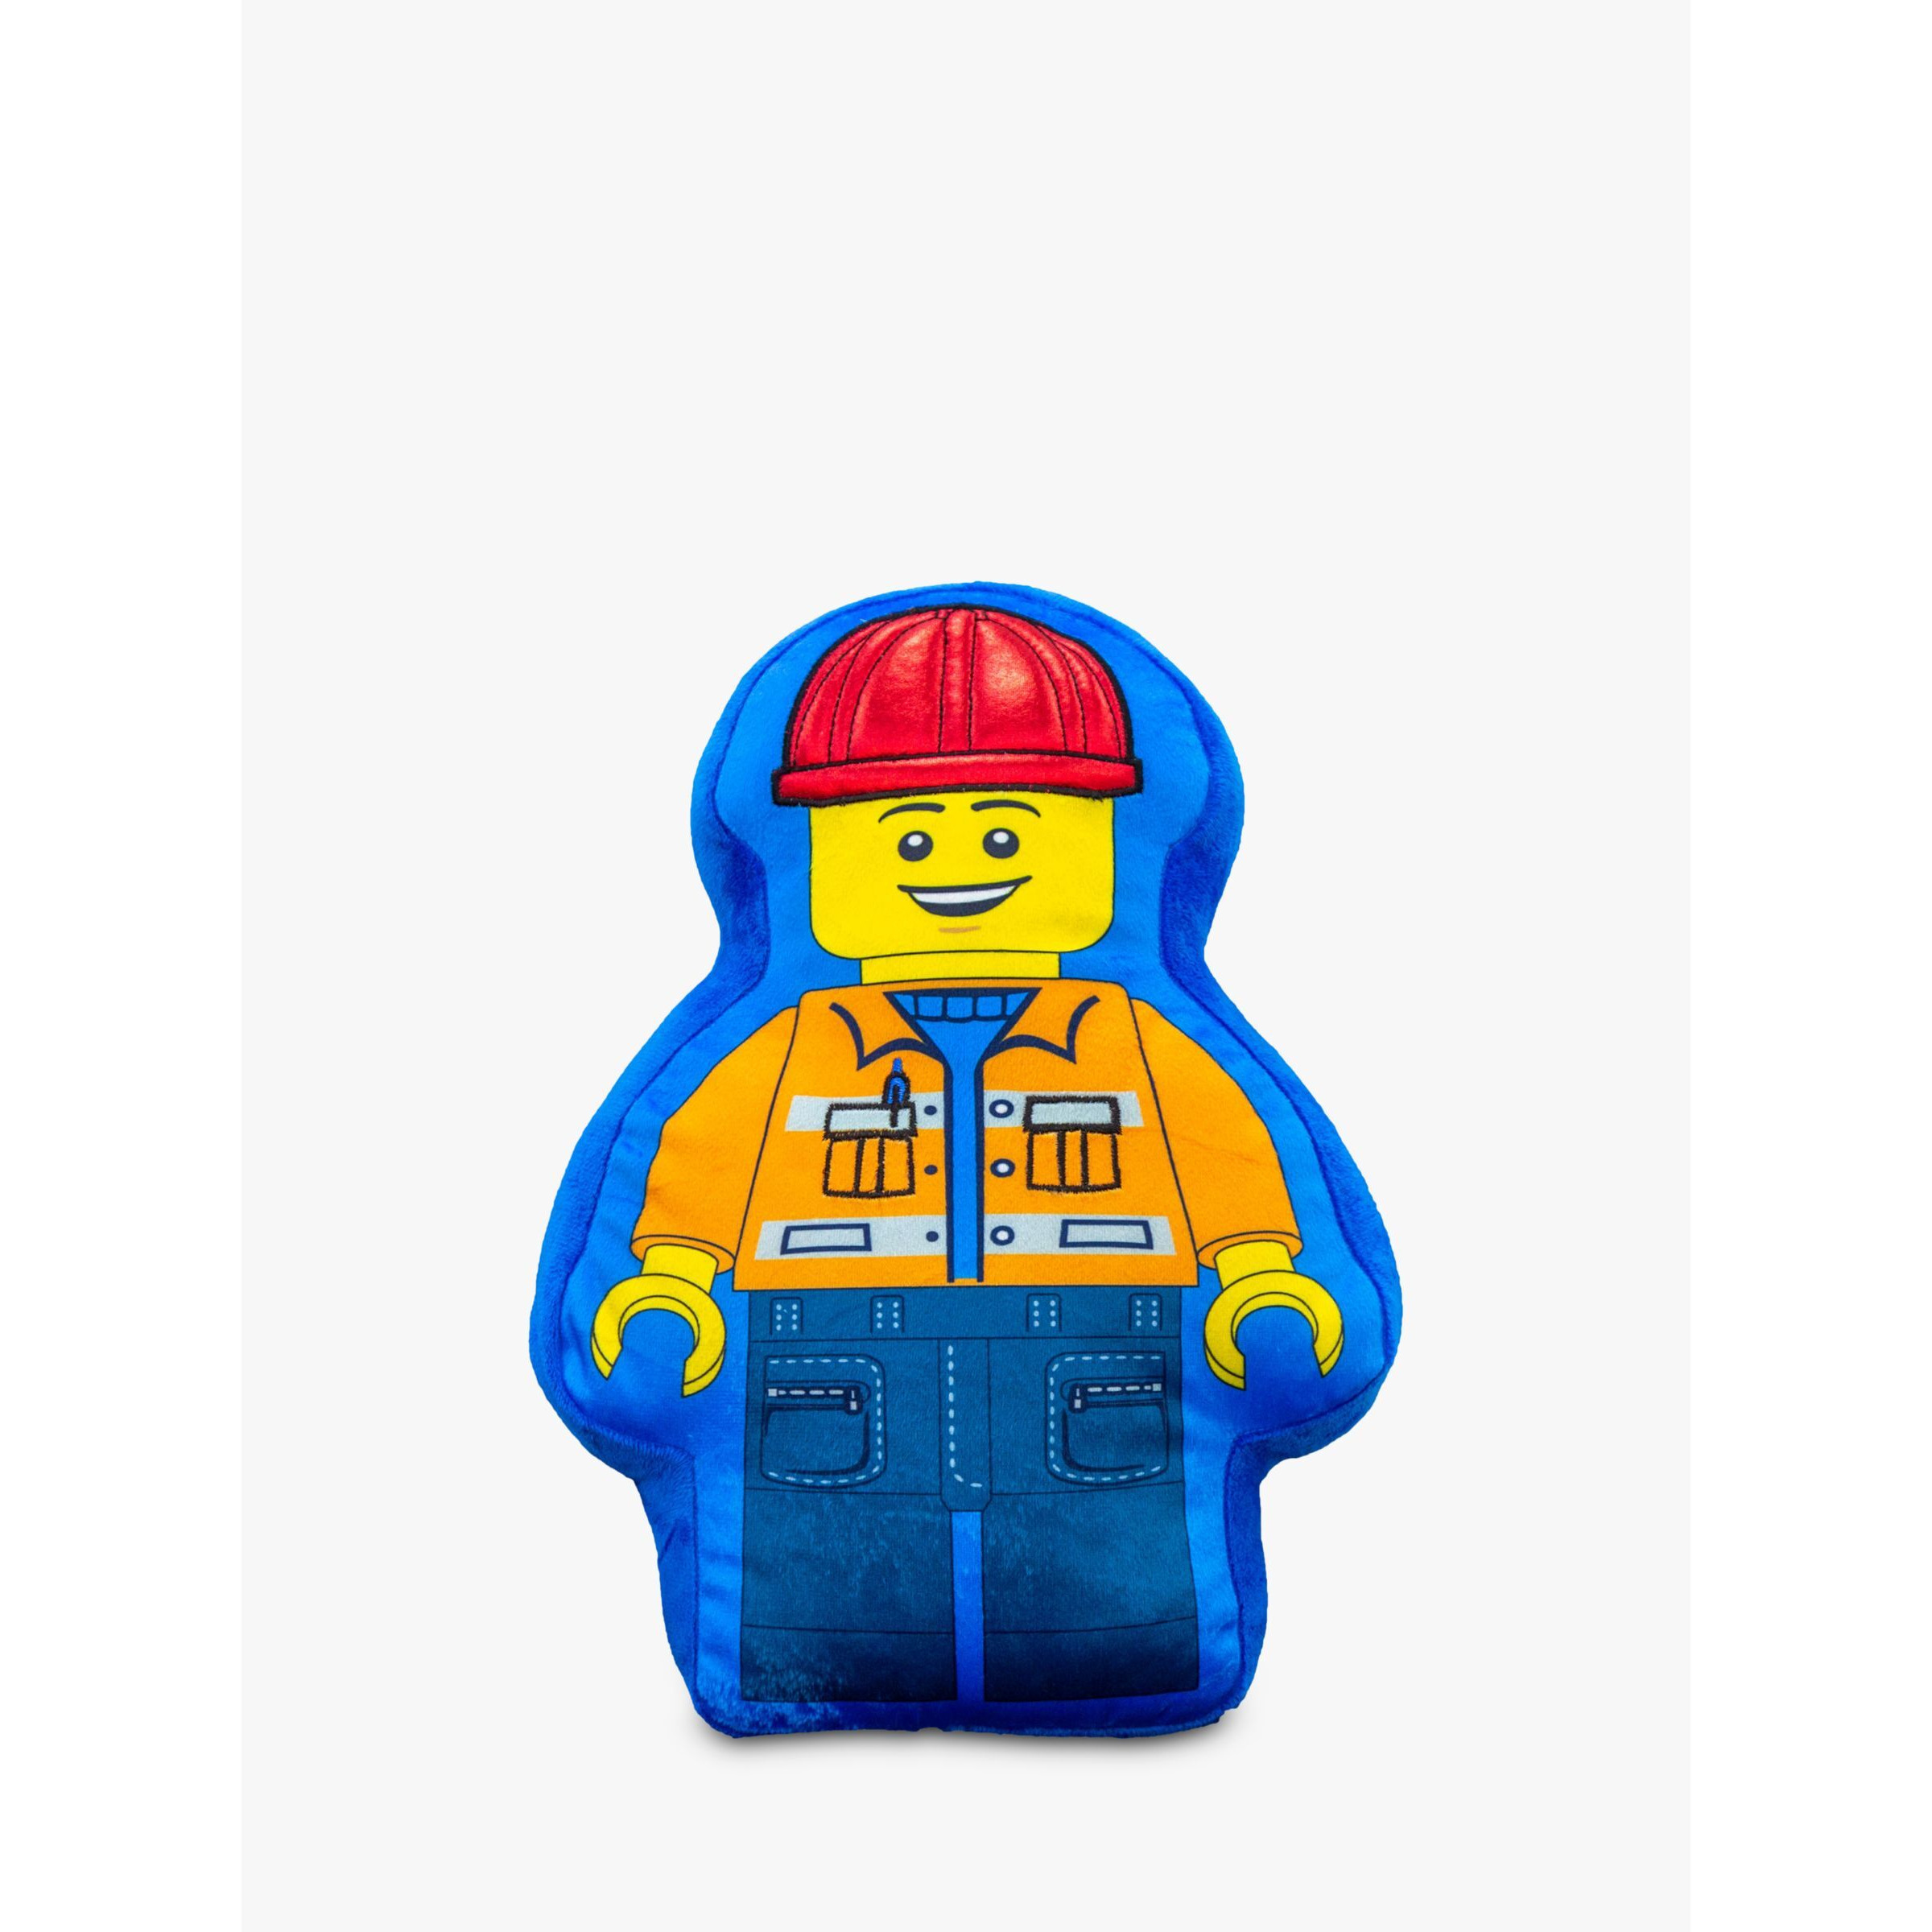 LEGO Minifigure Shaped Plush Cushion - image 1